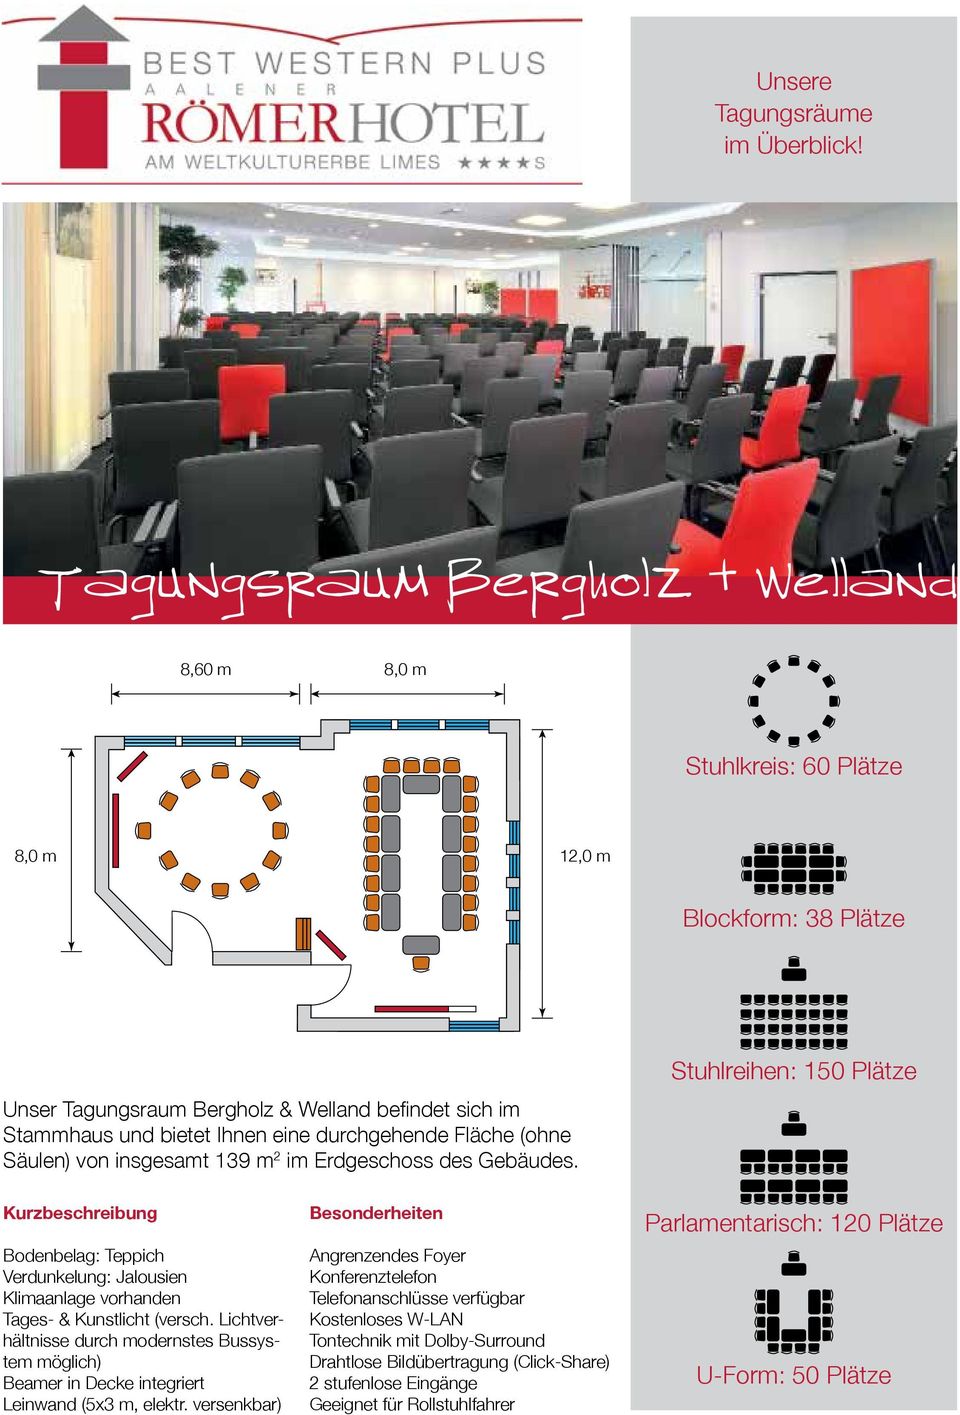 Stuhlreihen: 150 Plätze Bodenbelag: Teppich Tages- & Kunstlicht (versch.